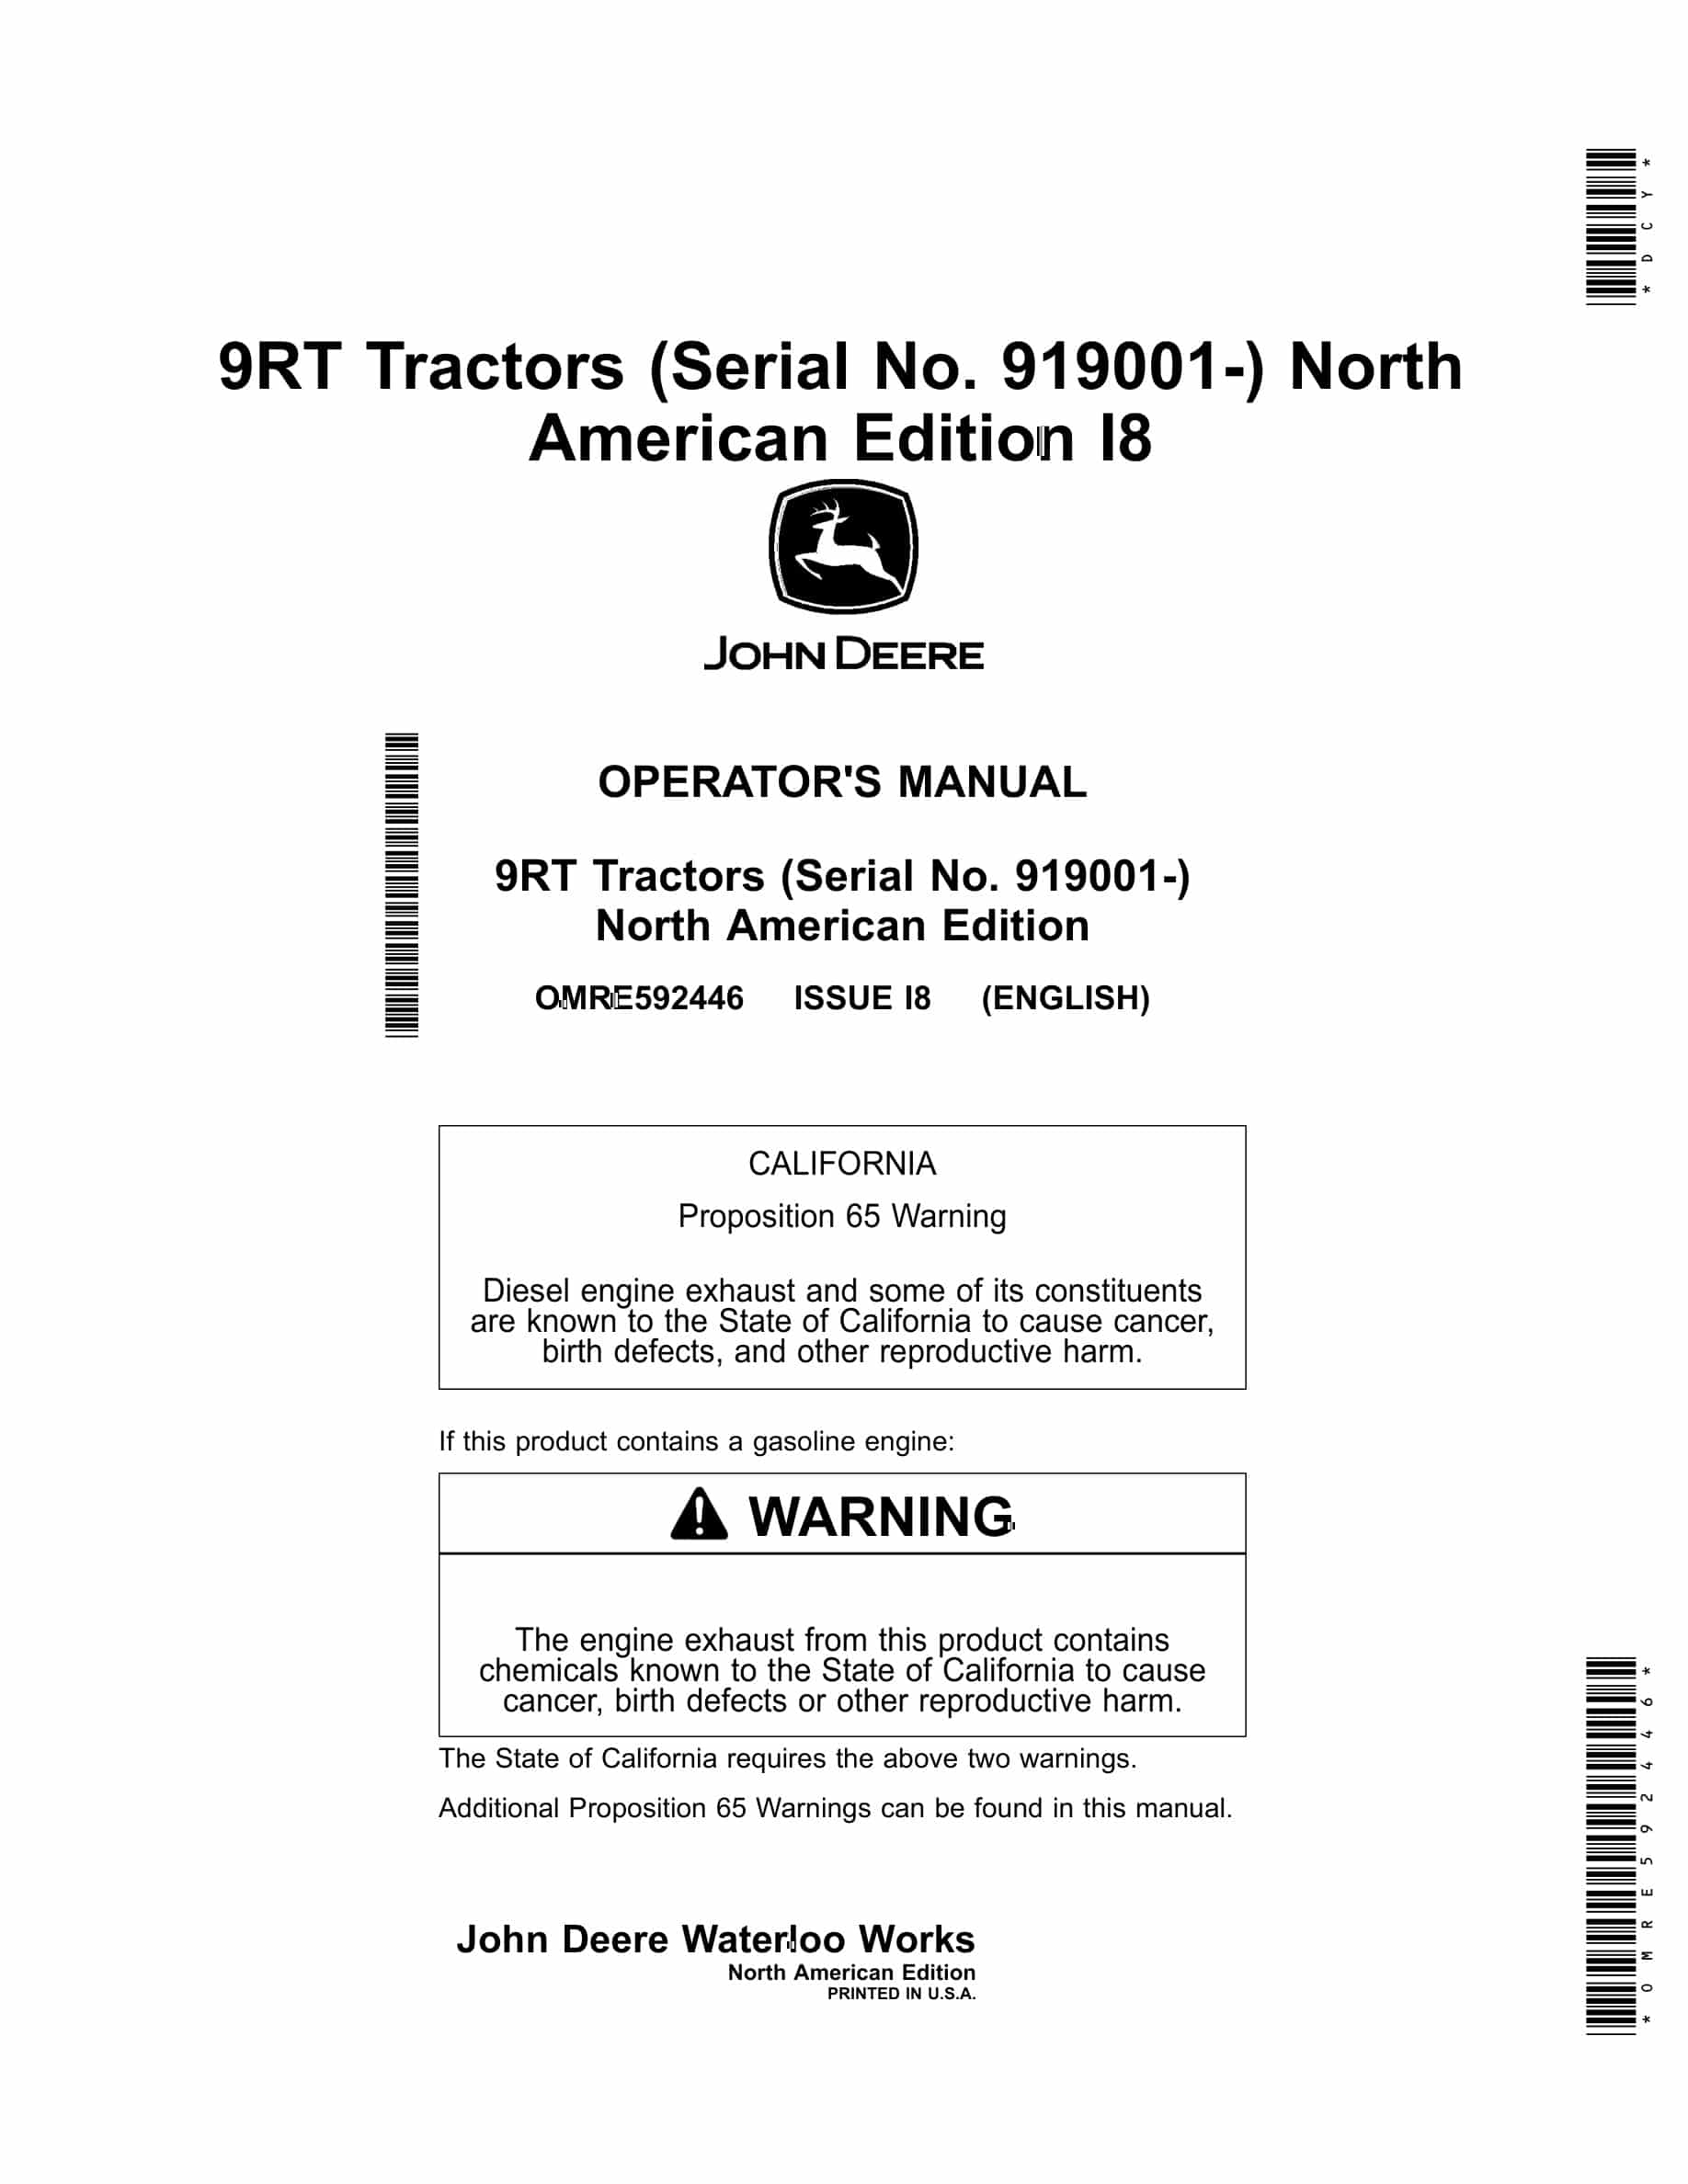 John Deere 9RT Tractor Operator Manual OMRE592446-1